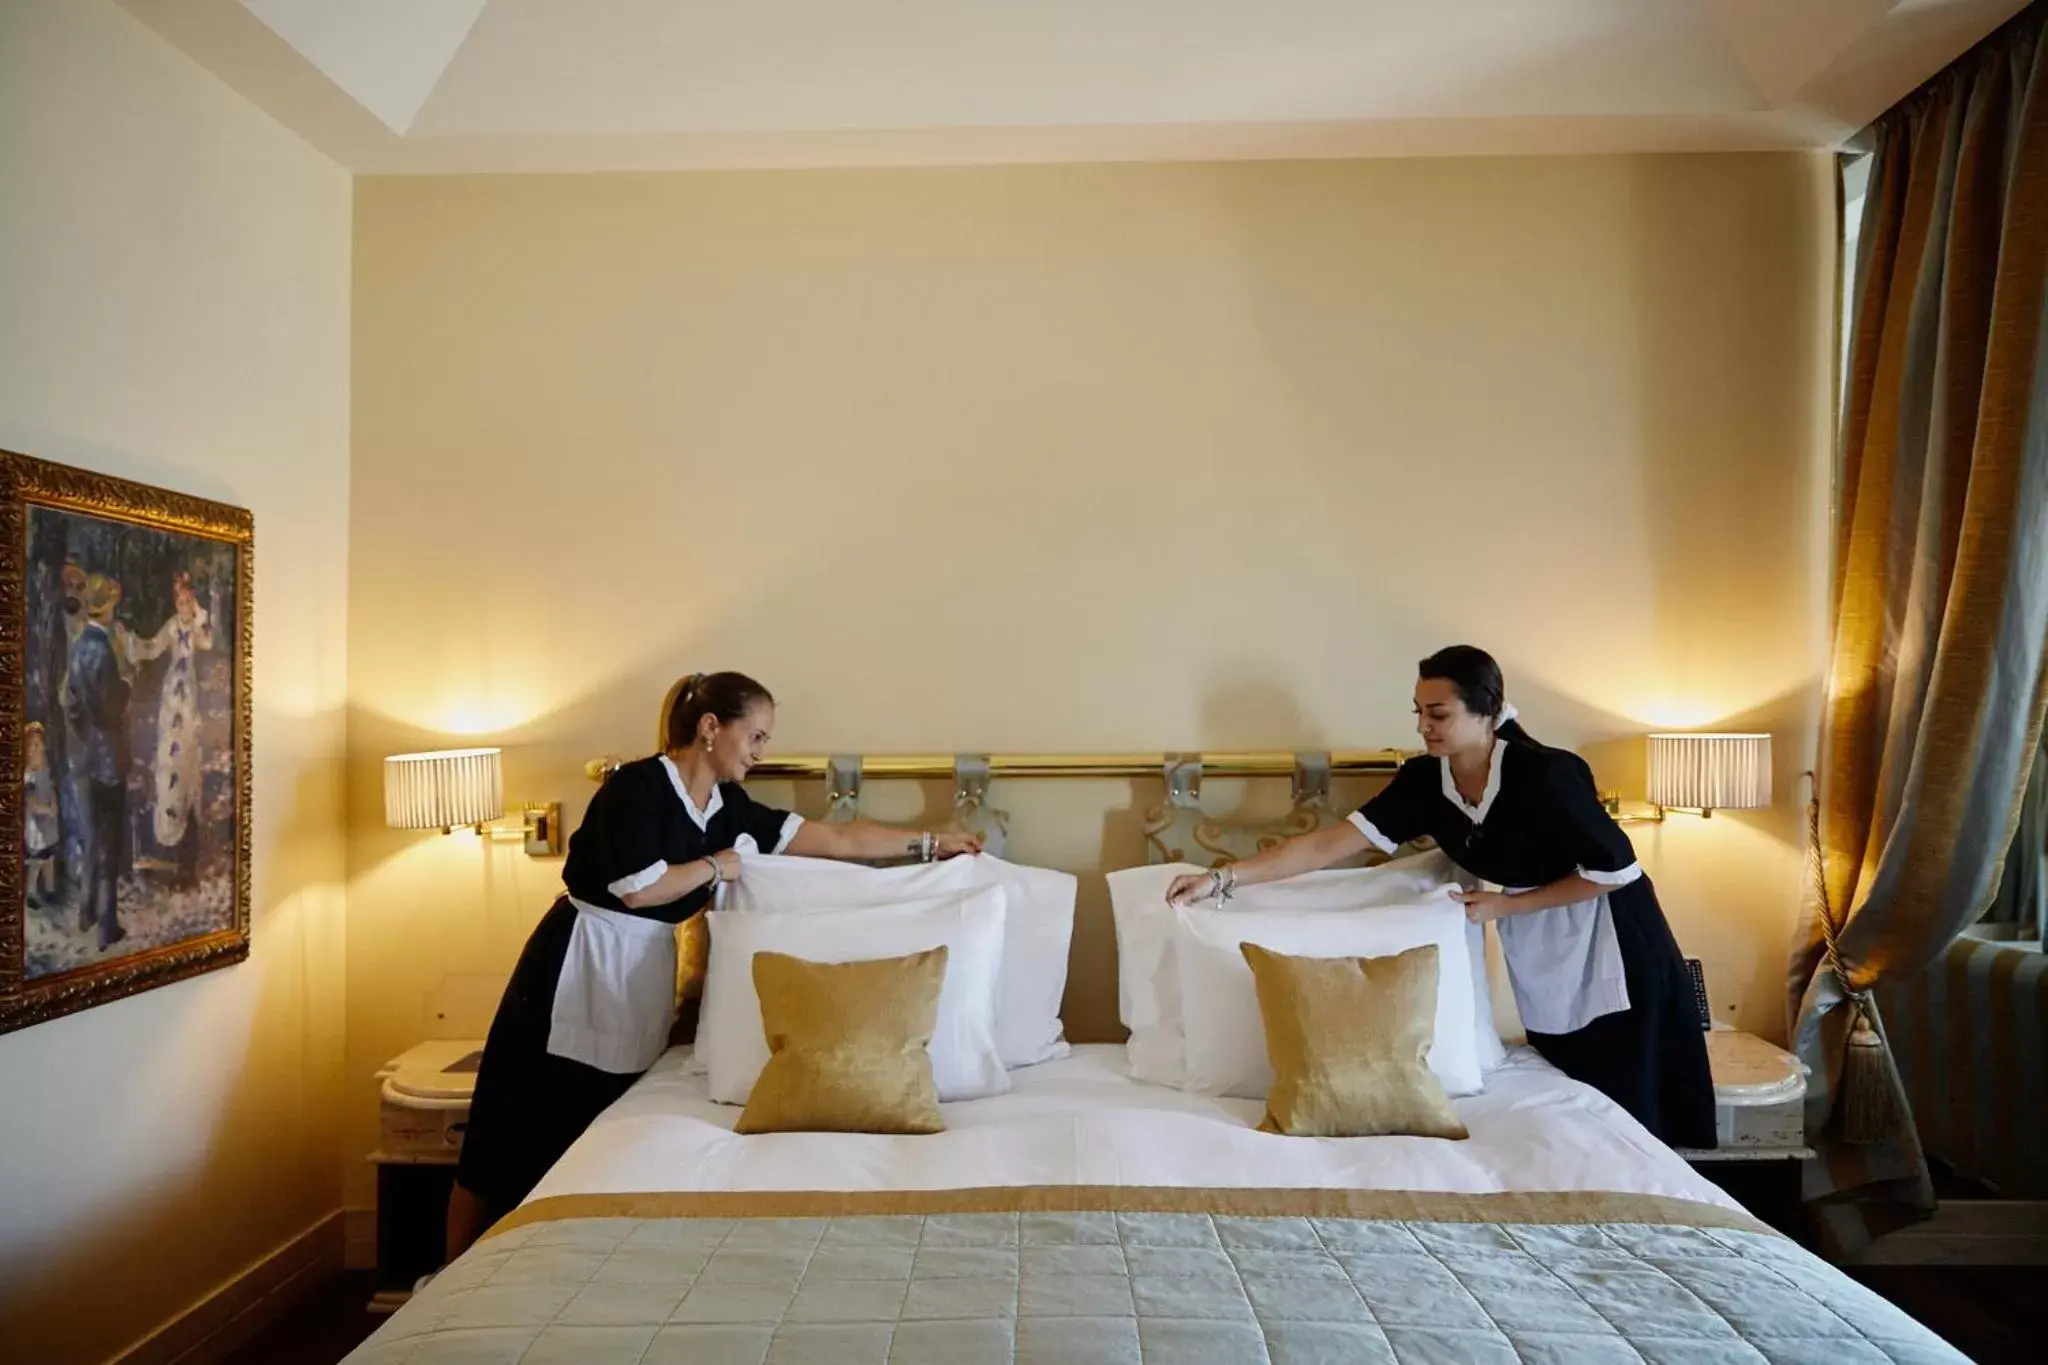 Bed in Villa Principe Leopoldo - Ticino Hotels Group